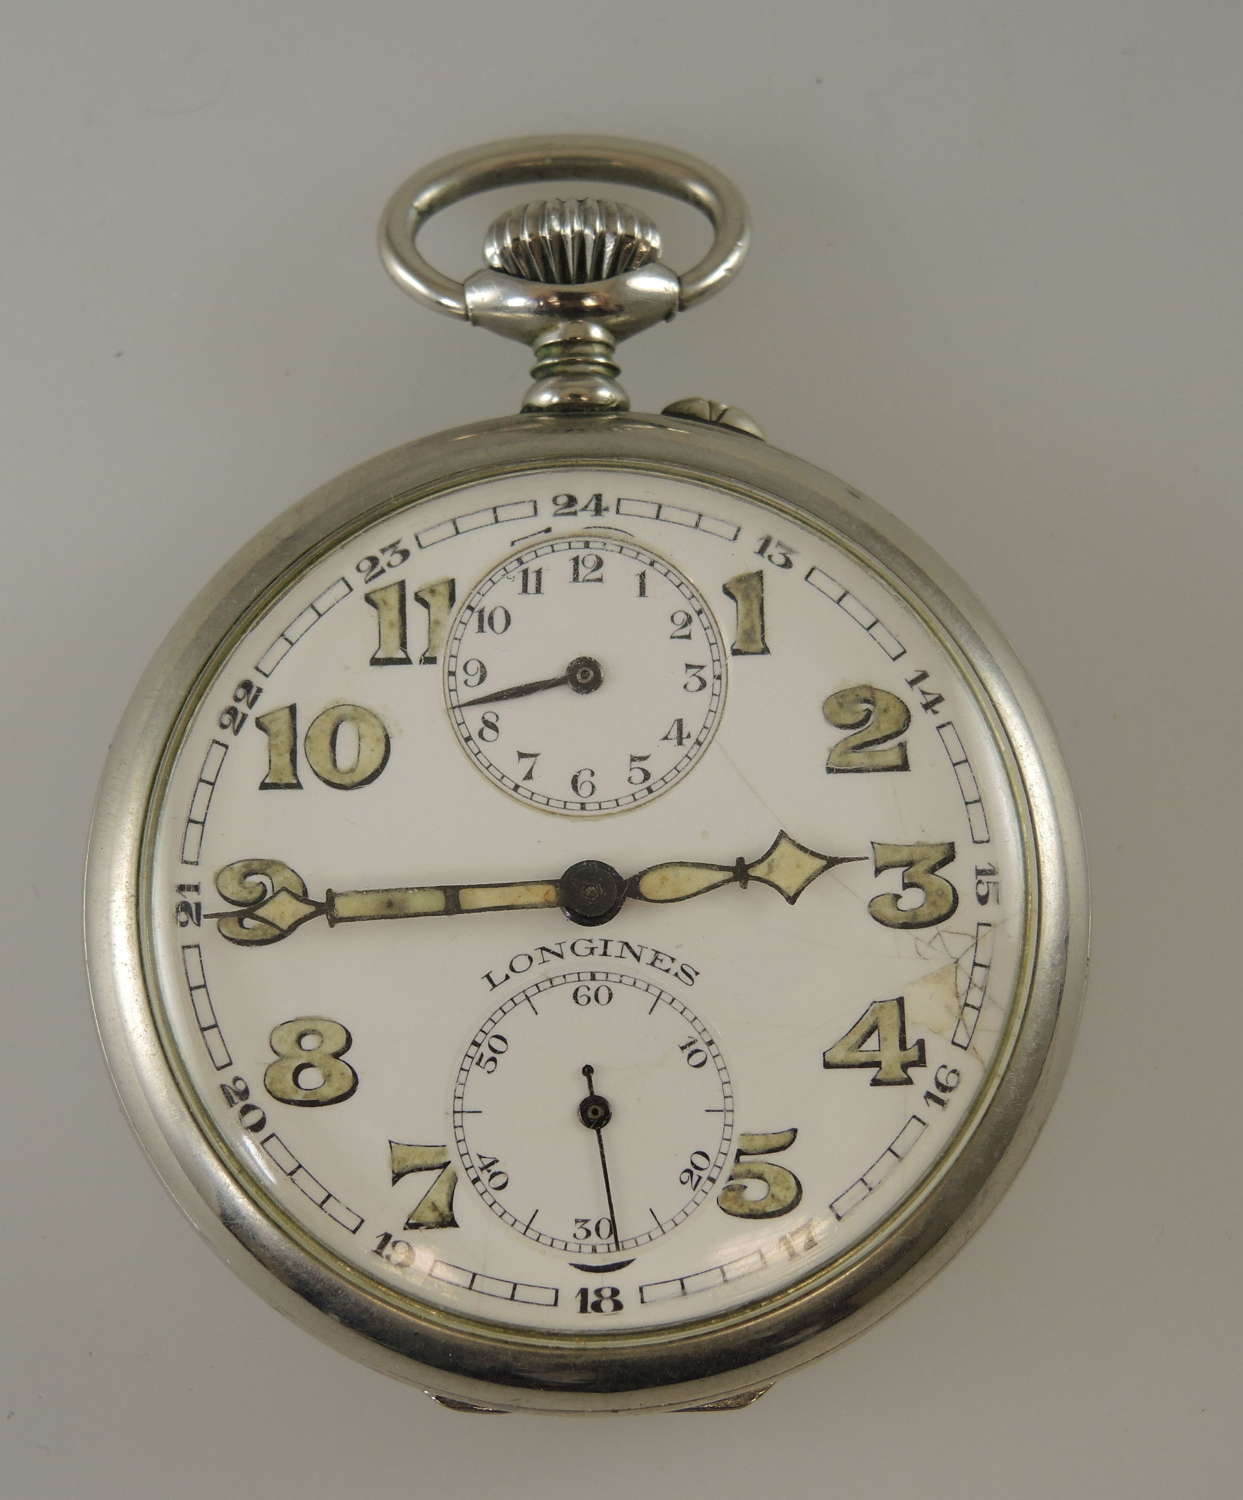 Alarm pocket watch by Longines c1910